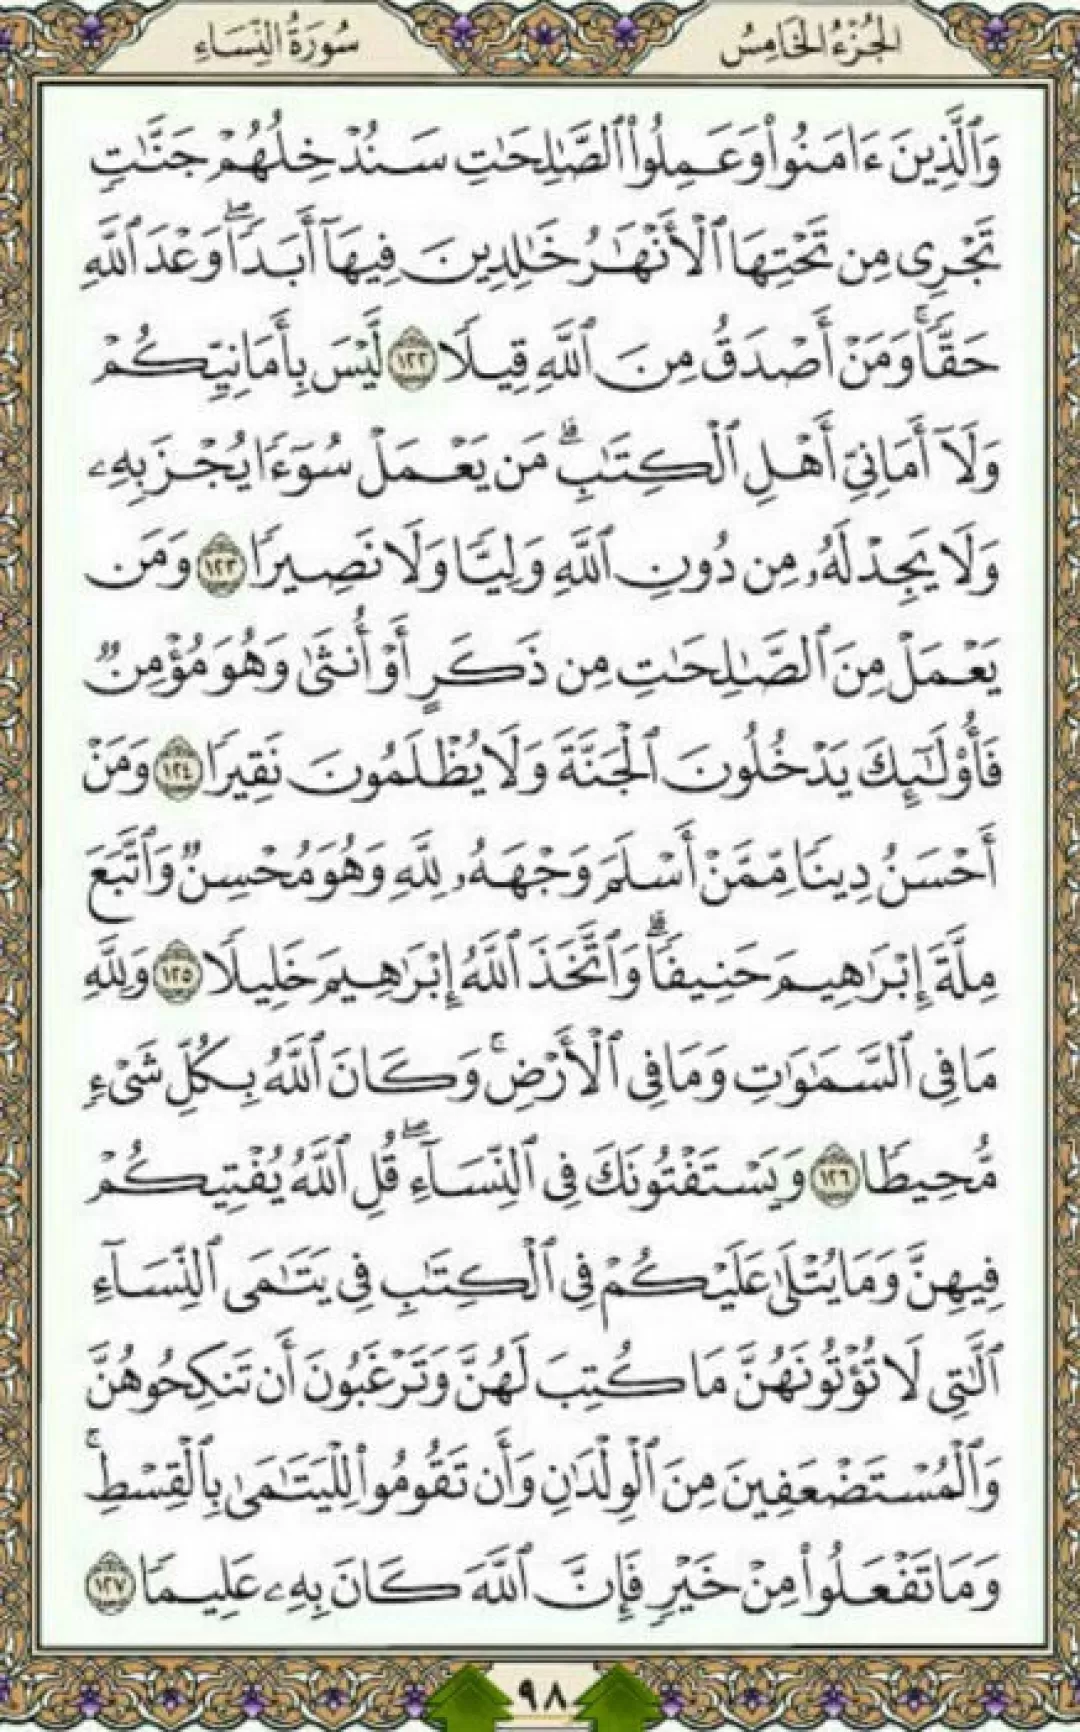 روزانه یک صفحه با آیات الهی قرآن